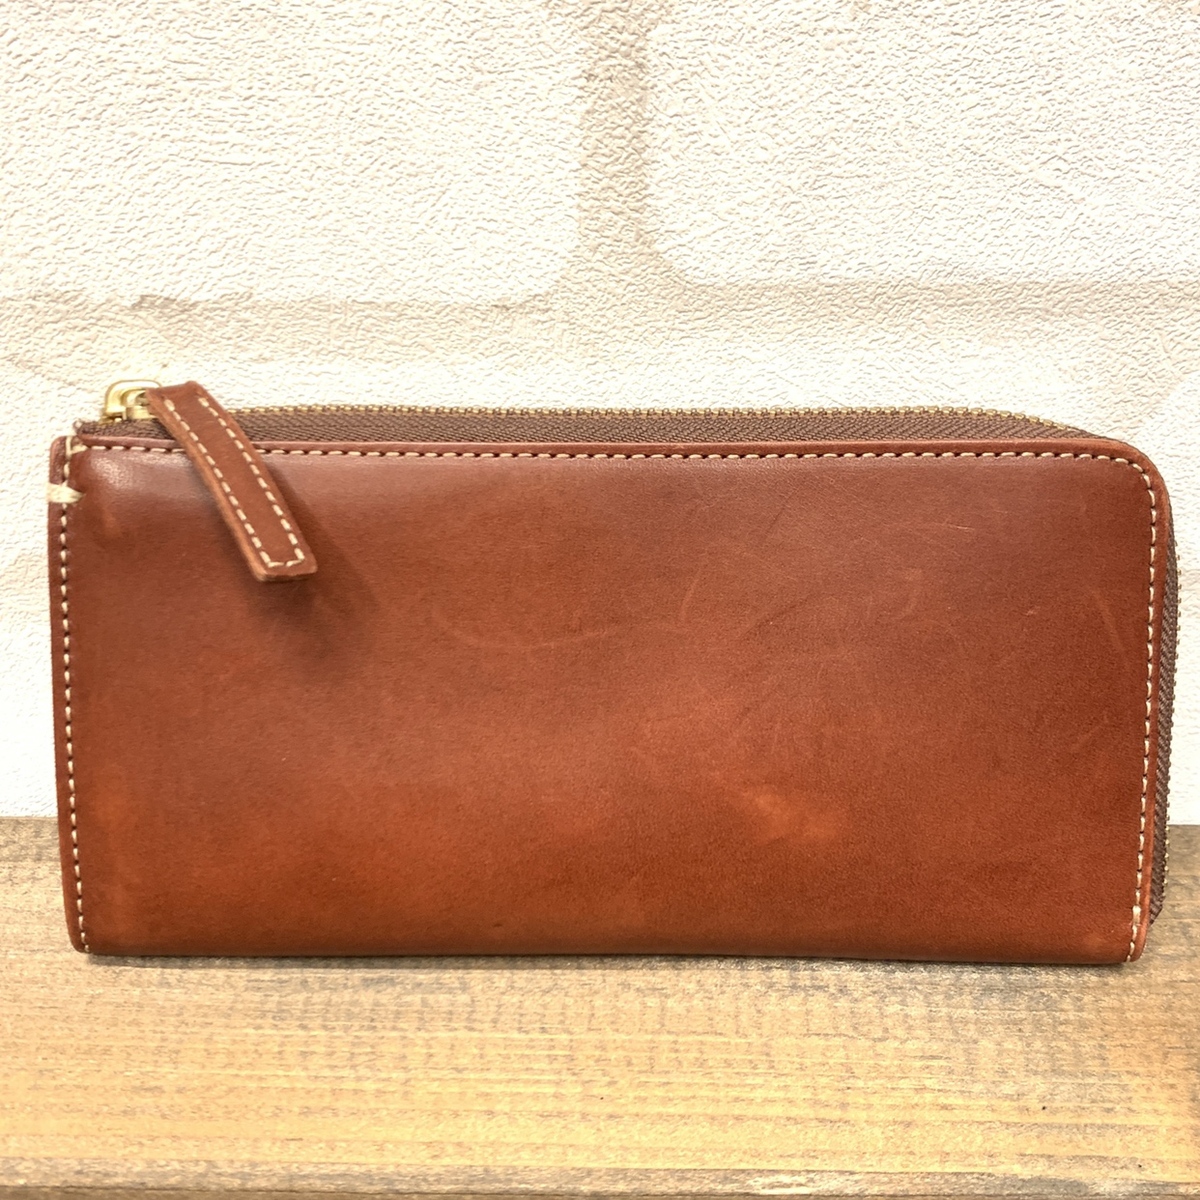 土屋鞄製造所のディアリオシリーズ ブラウンカラー マスターL字ファスナー長財布の買取実績です。